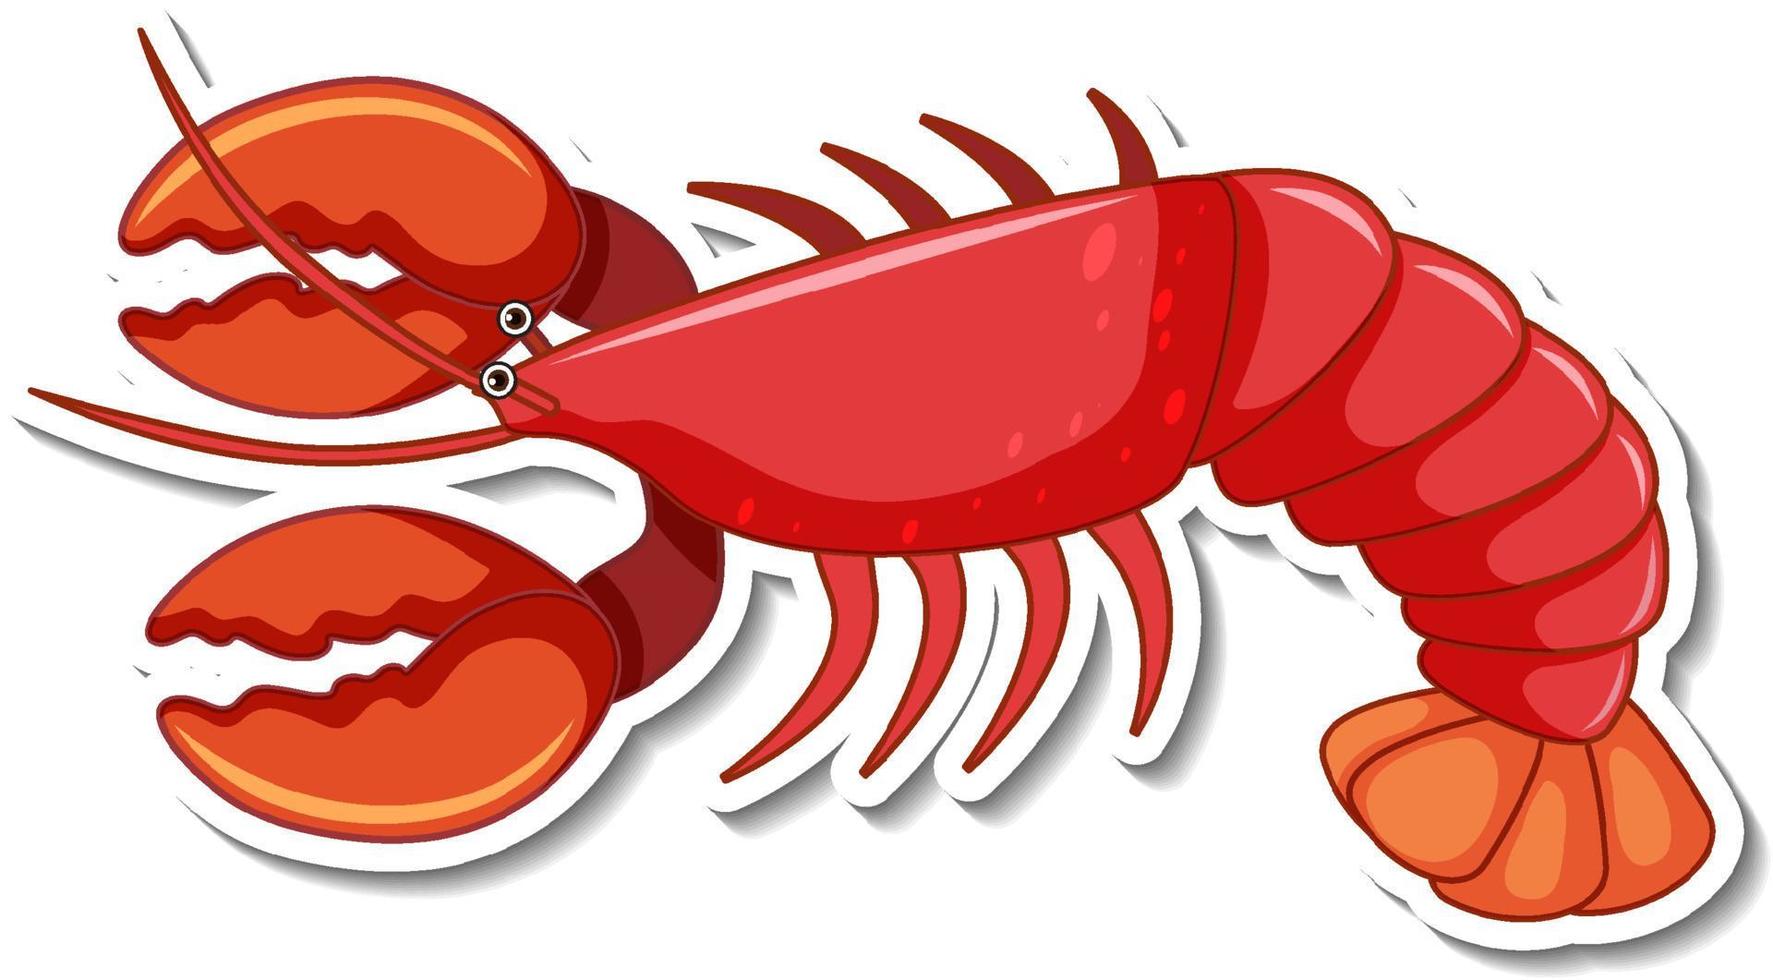 Red lobster cartoon sticker vector